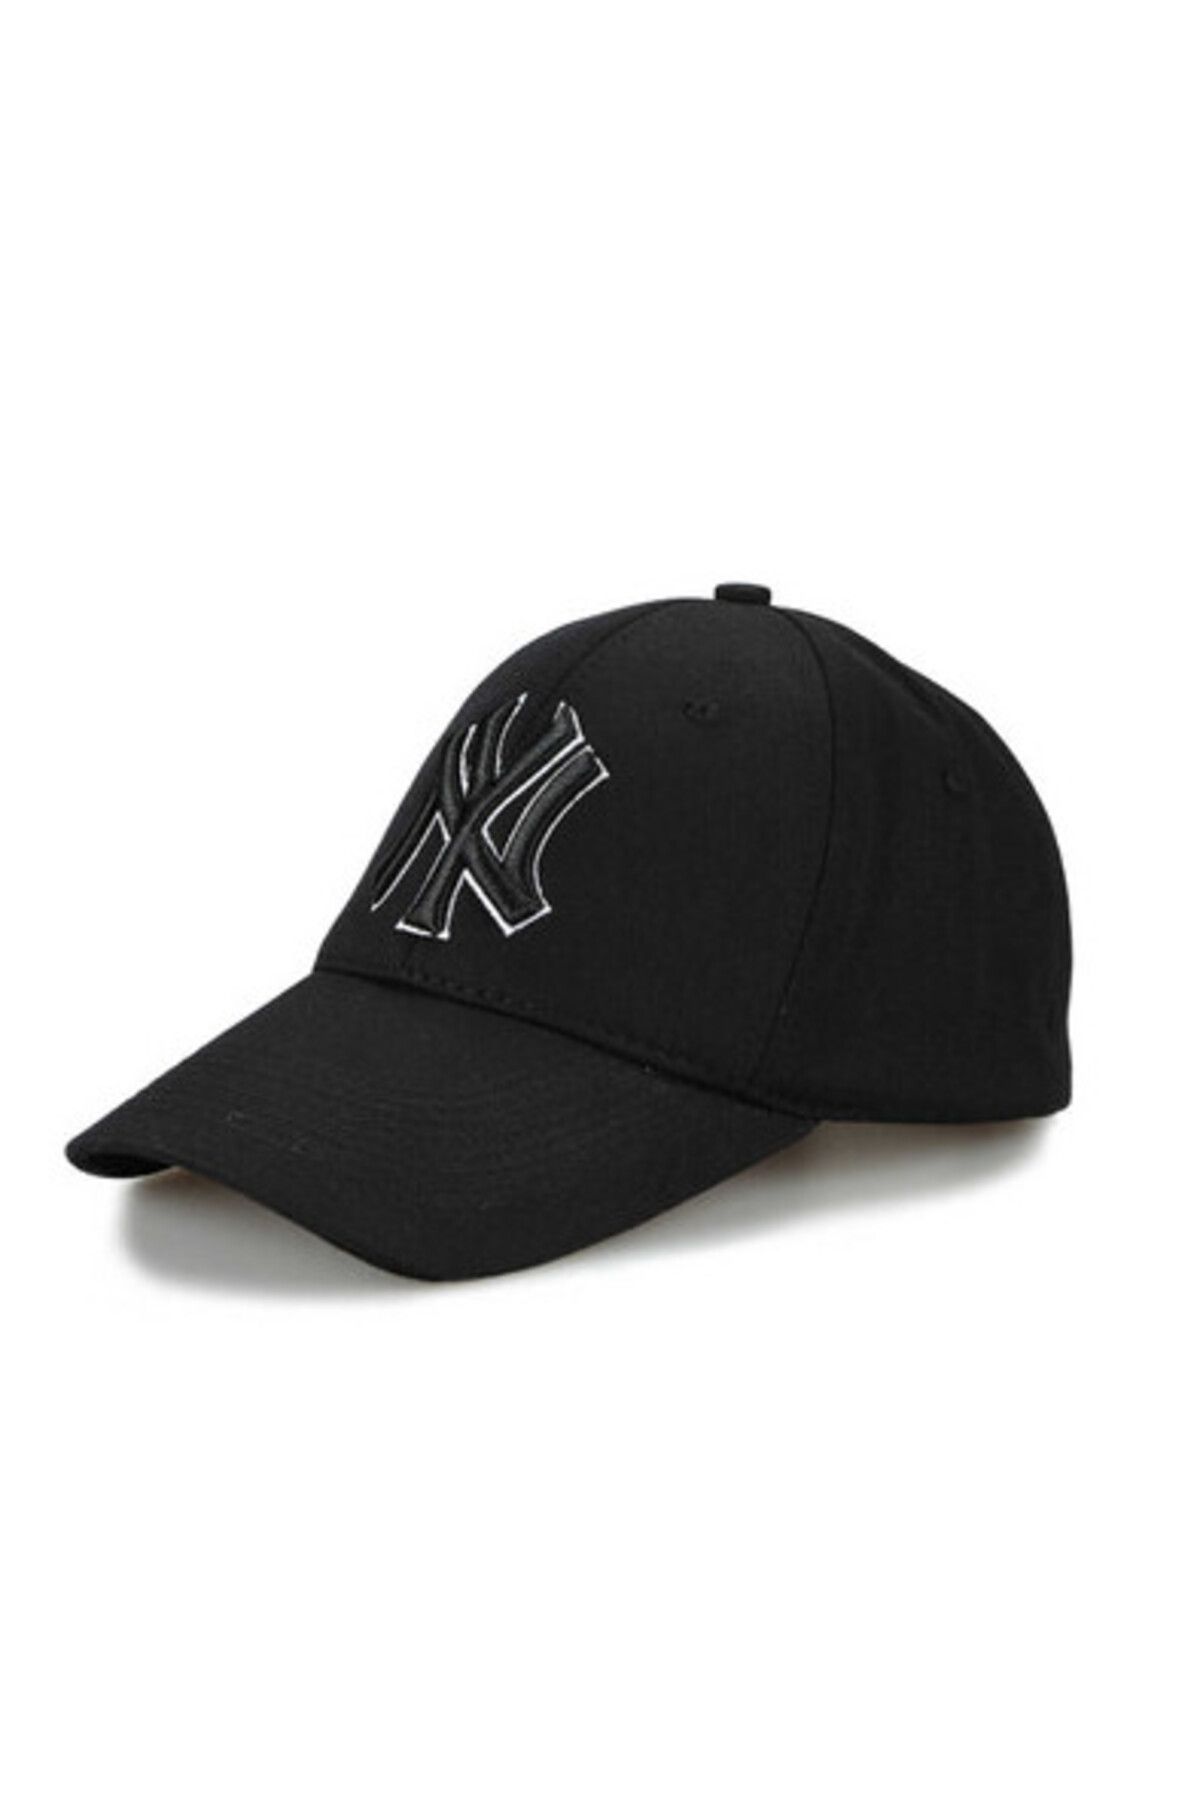 CosmoOutlet Ny New York Logolu Kontürlü Pamuklu Unisex Siyah Şapka